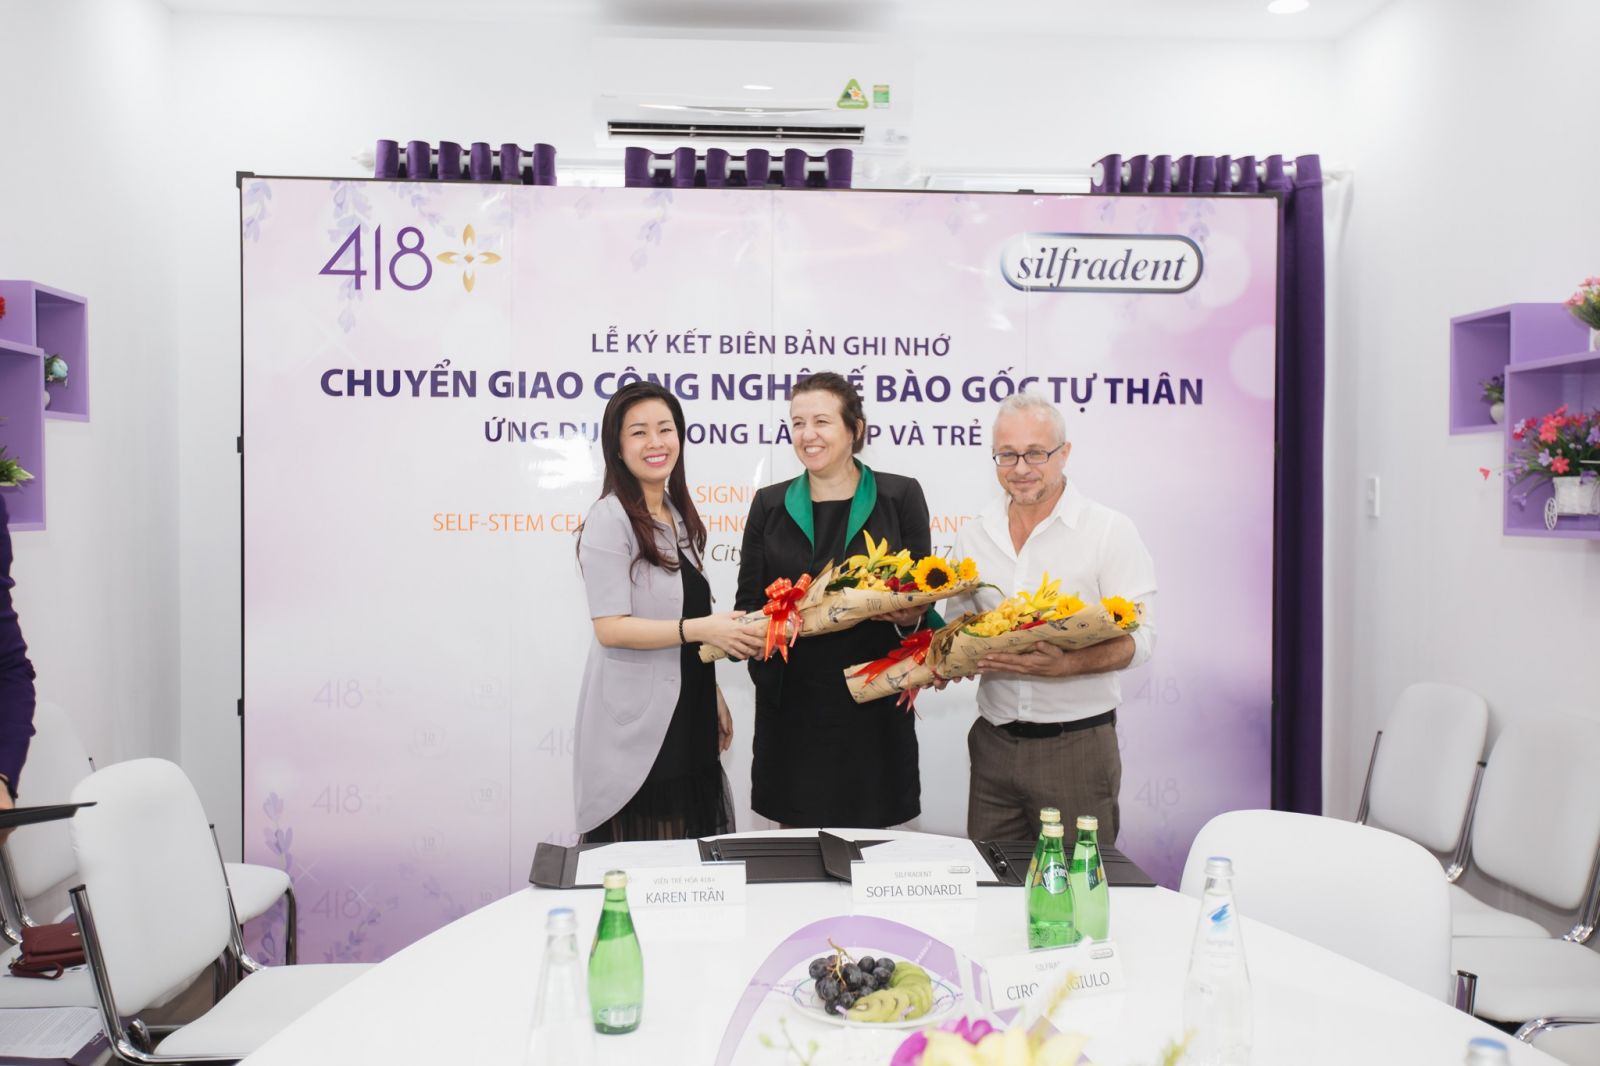 Bà Karen Trần (ngoài cùng bên trái)- CEO của Viện 418+ chụp hình lưu niệm với bà Sofia-đại diện thương hiệu Silfraden và bác Sĩ Ciro Gargiulo